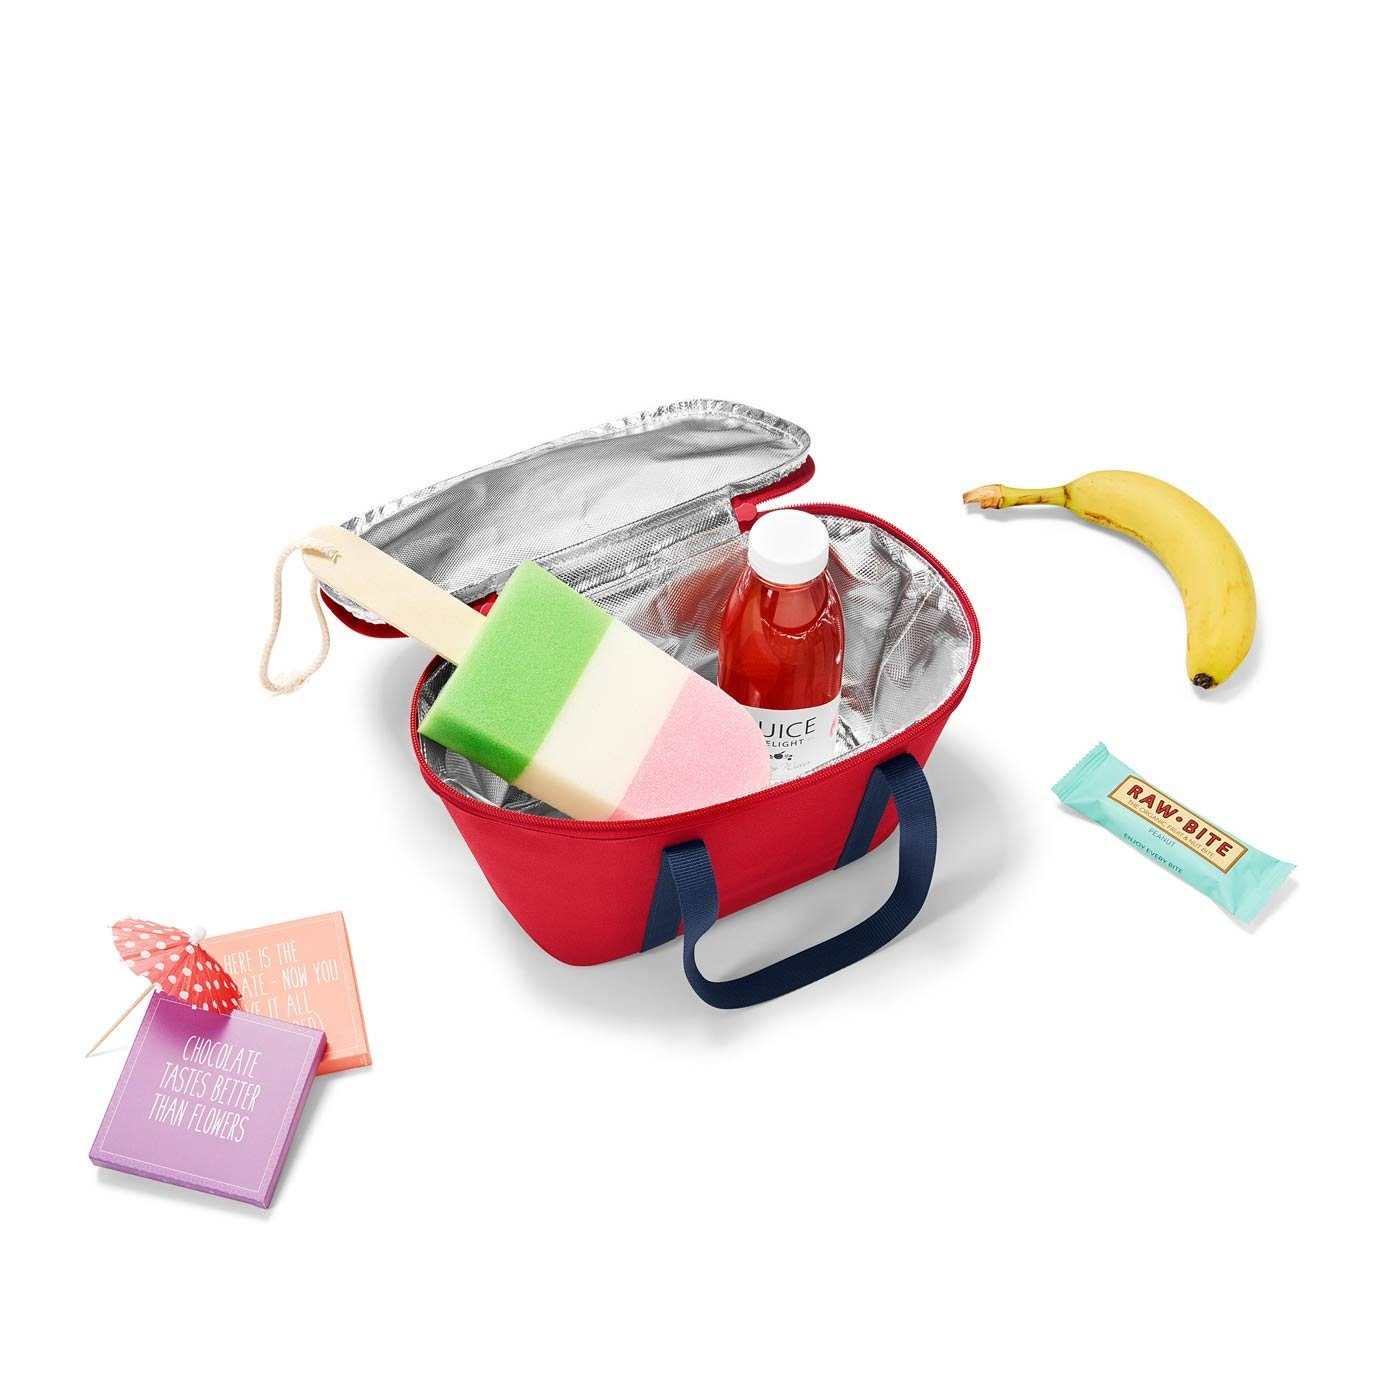 kühltasche tasche rot Kids xs REISENTHEL® coolerbag reisenthel Kinder Einkaufskorb, isolierte picknicktasche